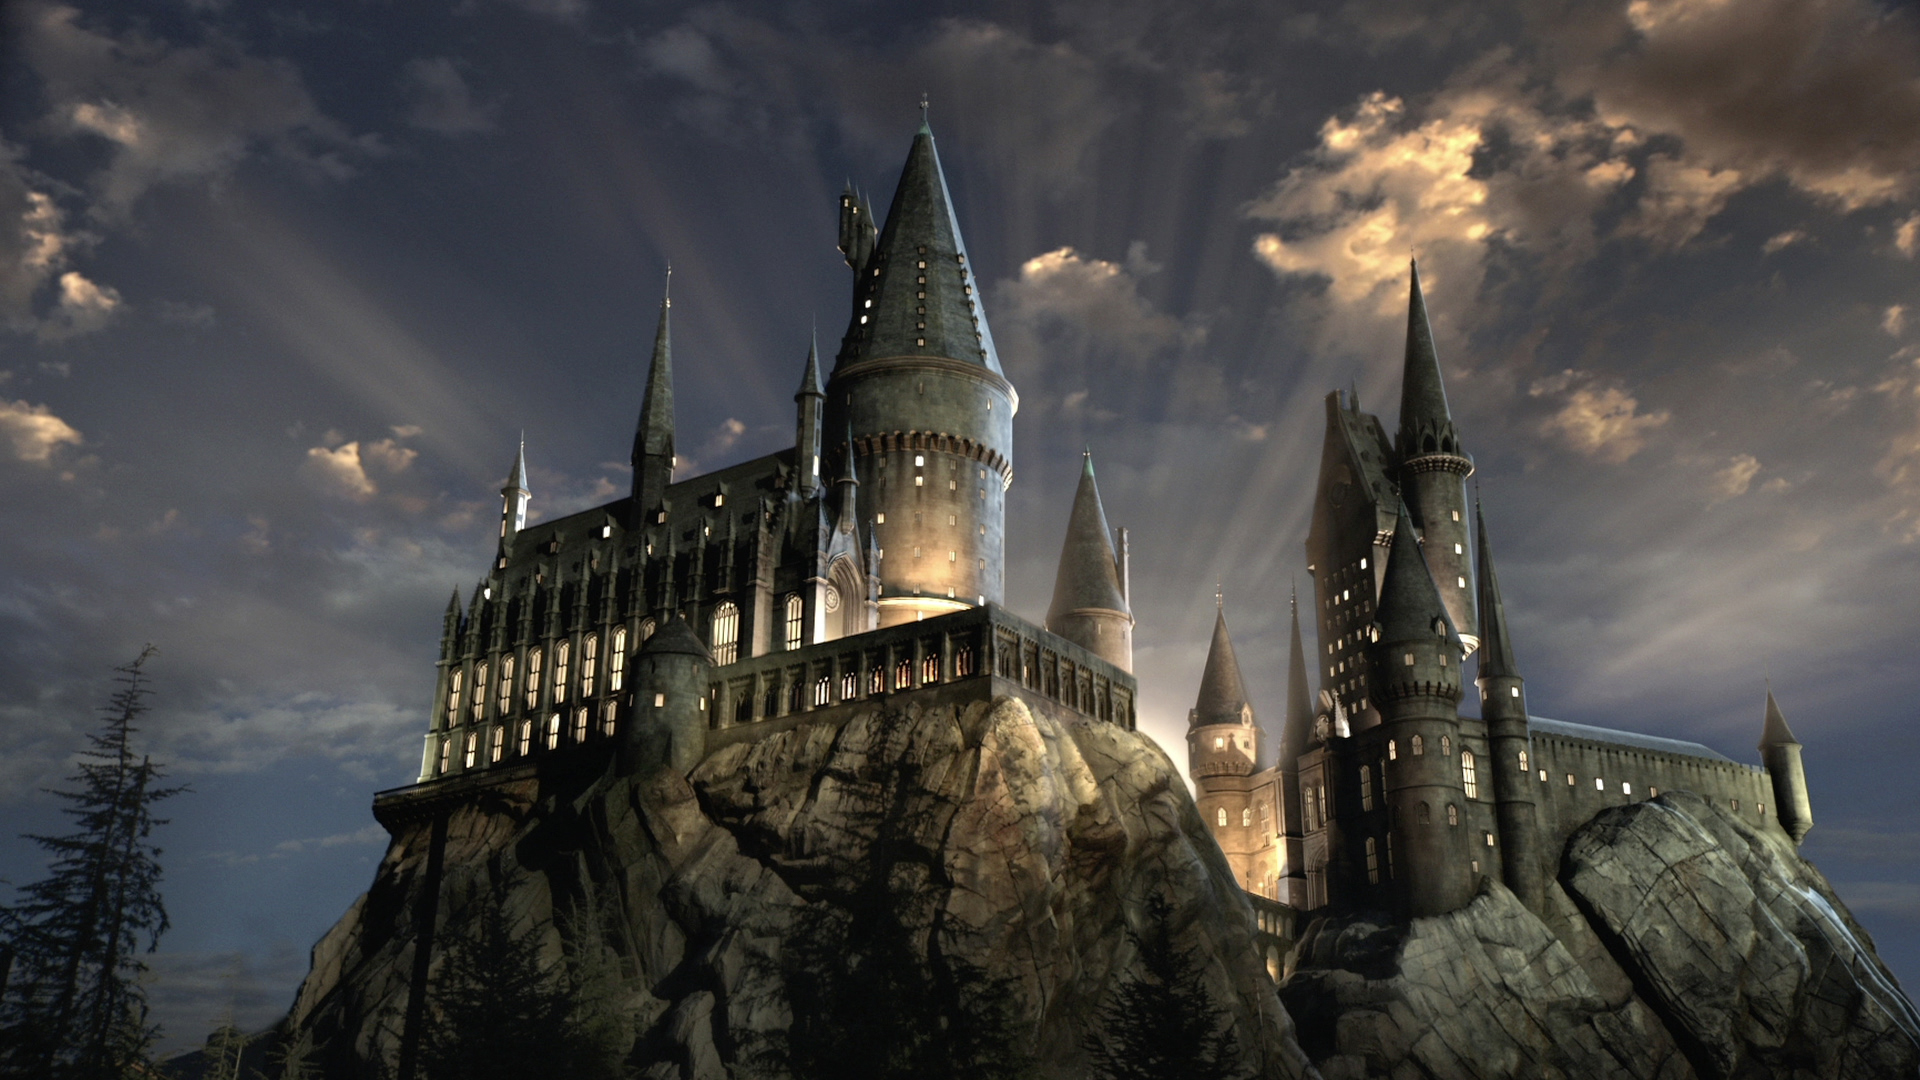 Hogwarts Castle Backgrounds, Compatible - PC, Mobile, Gadgets| 1920x1080 px